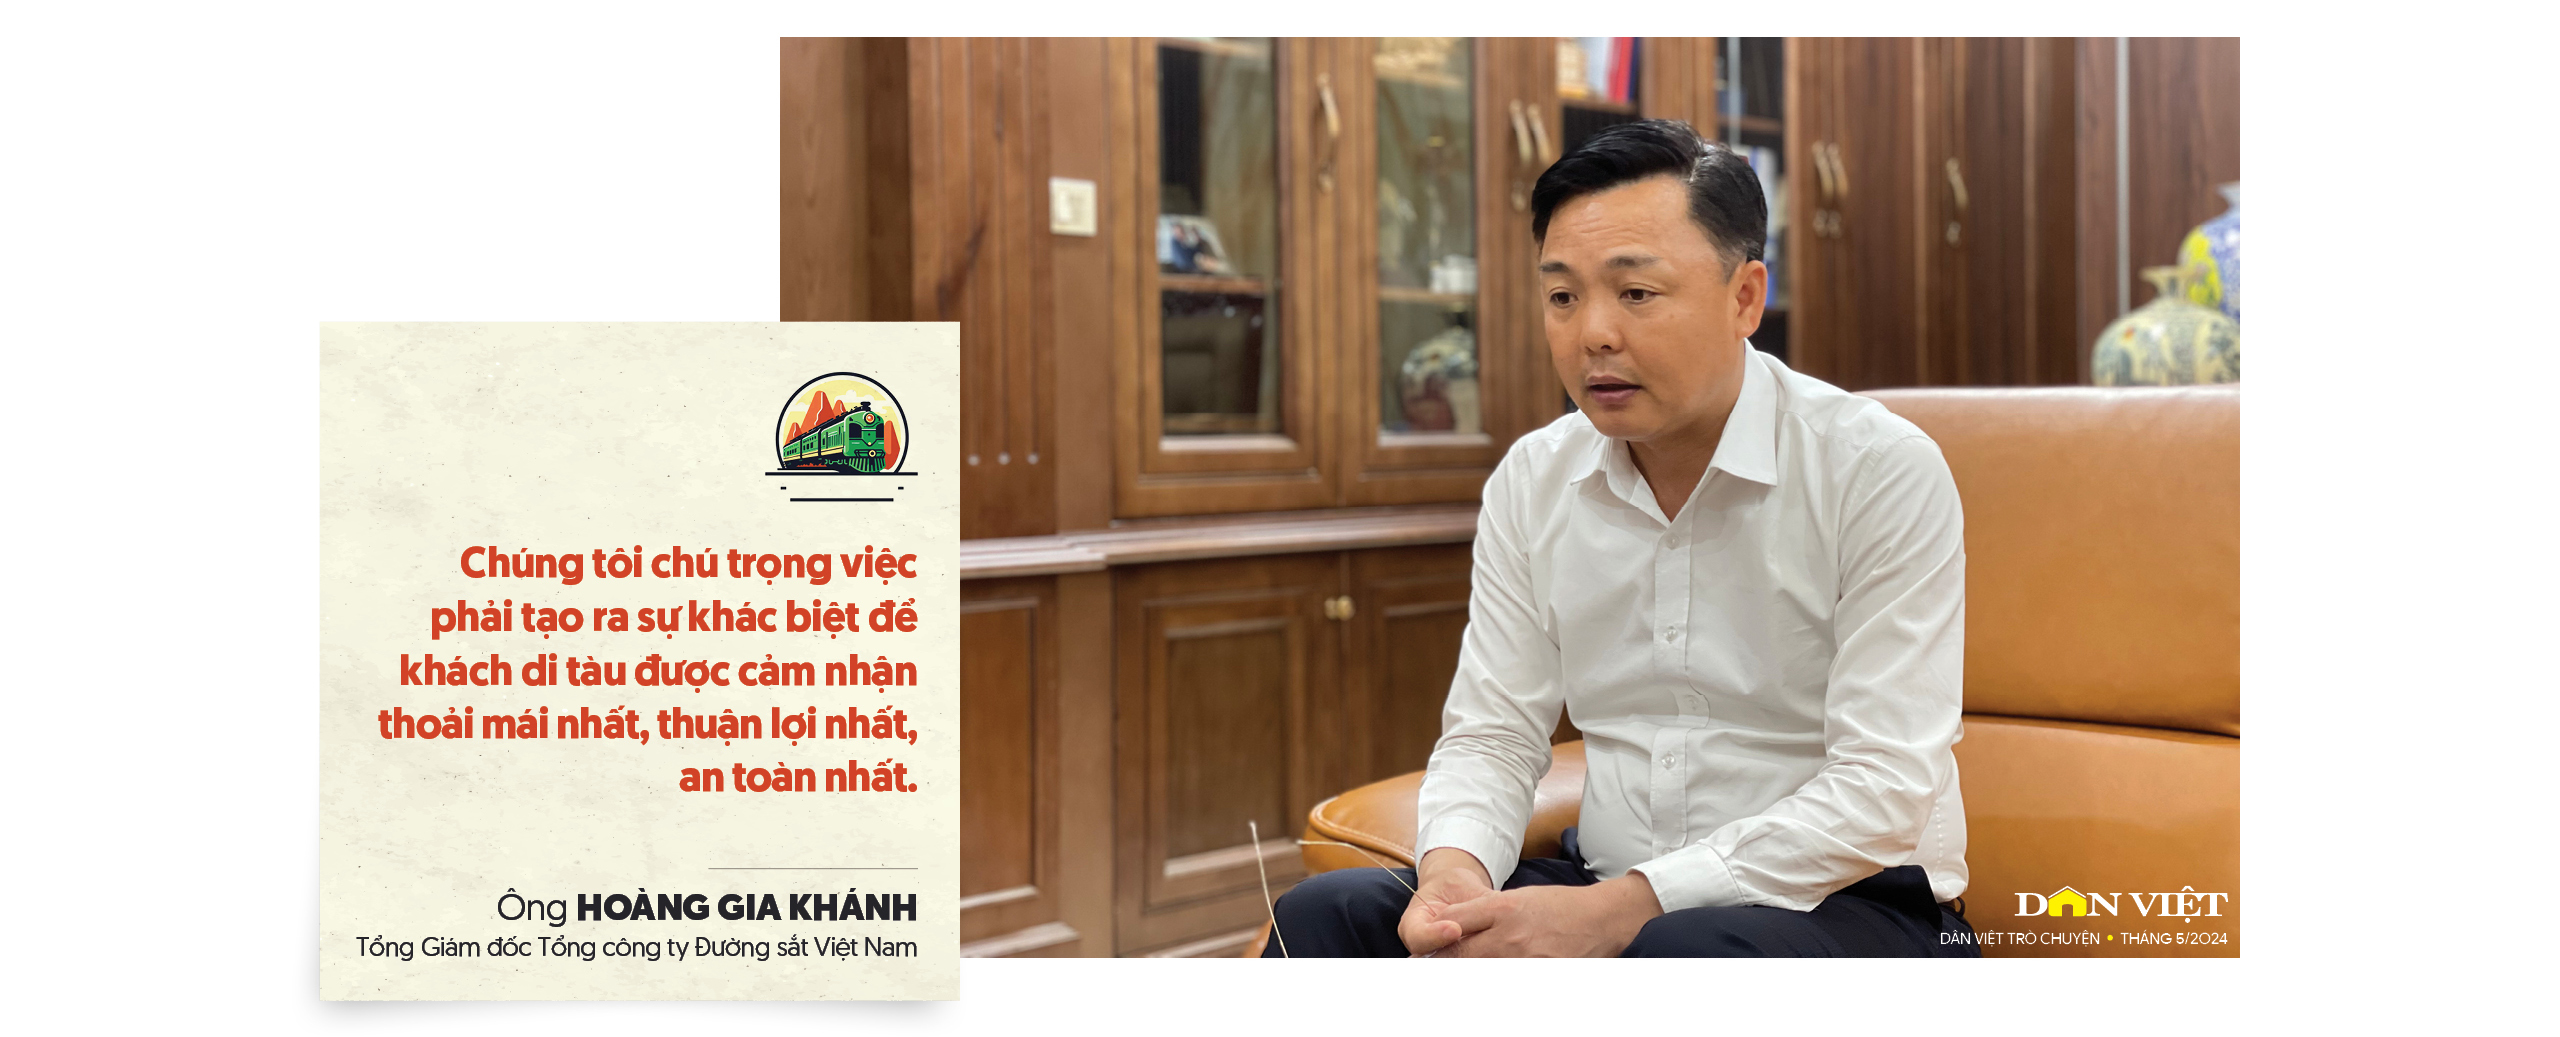 Ông Hoàng Gia Khánh - Tổng Giám đốc Đường sắt Việt Nam: Không thể cứ ngồi đó "ăn mày quá khứ"!- Ảnh 4.